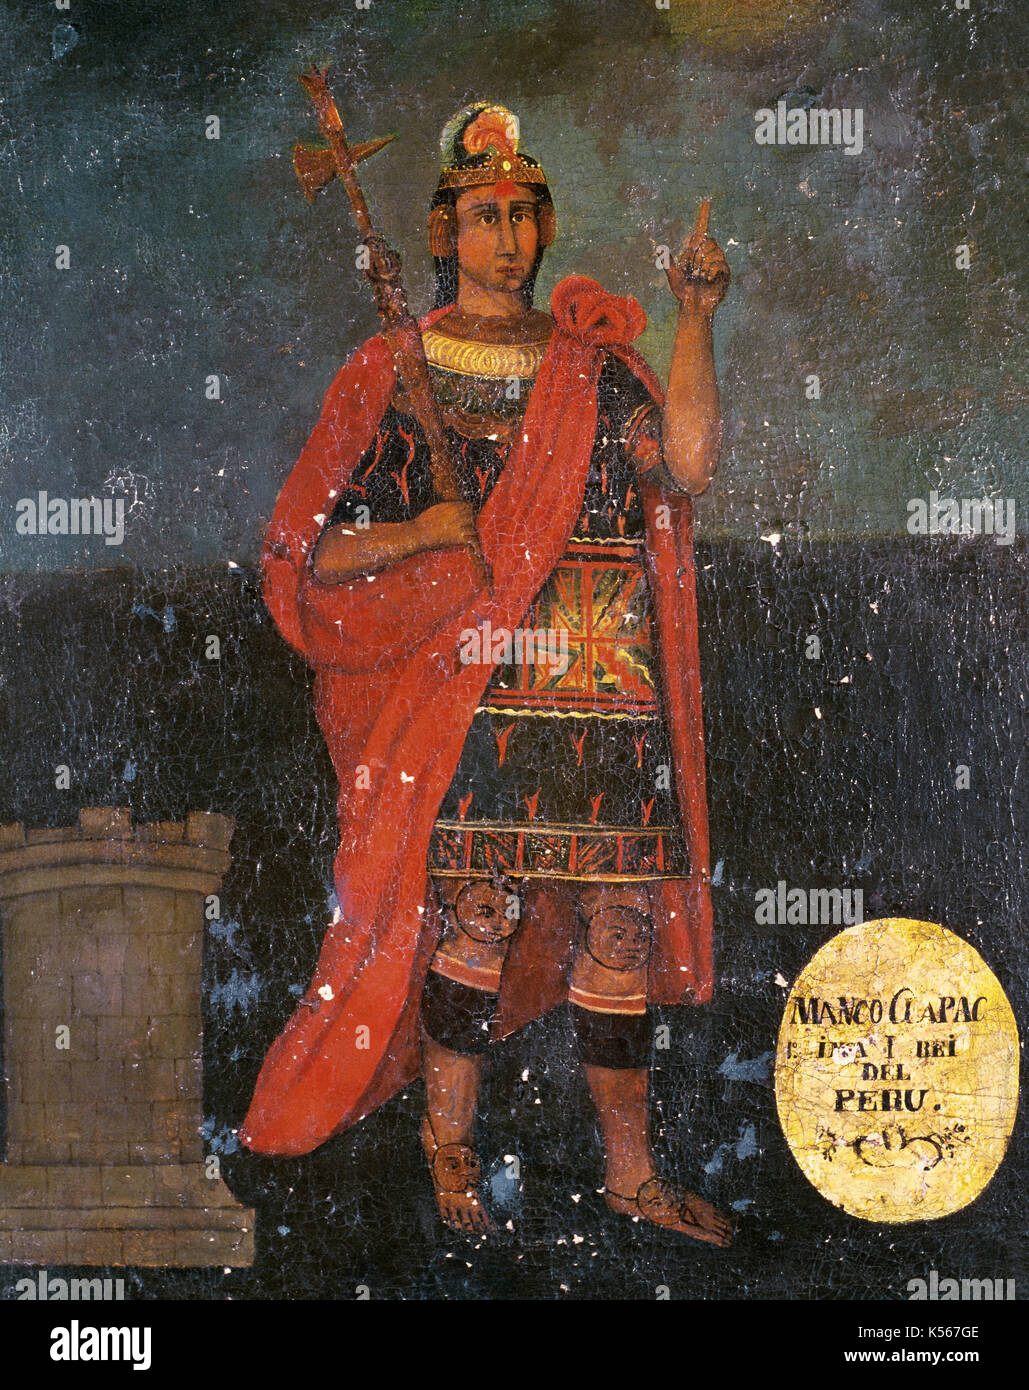 Manco Capac (13e siècle). premier gouverneur et fondateur de la civilisation inca. peinture anonyme. Banque D'Images